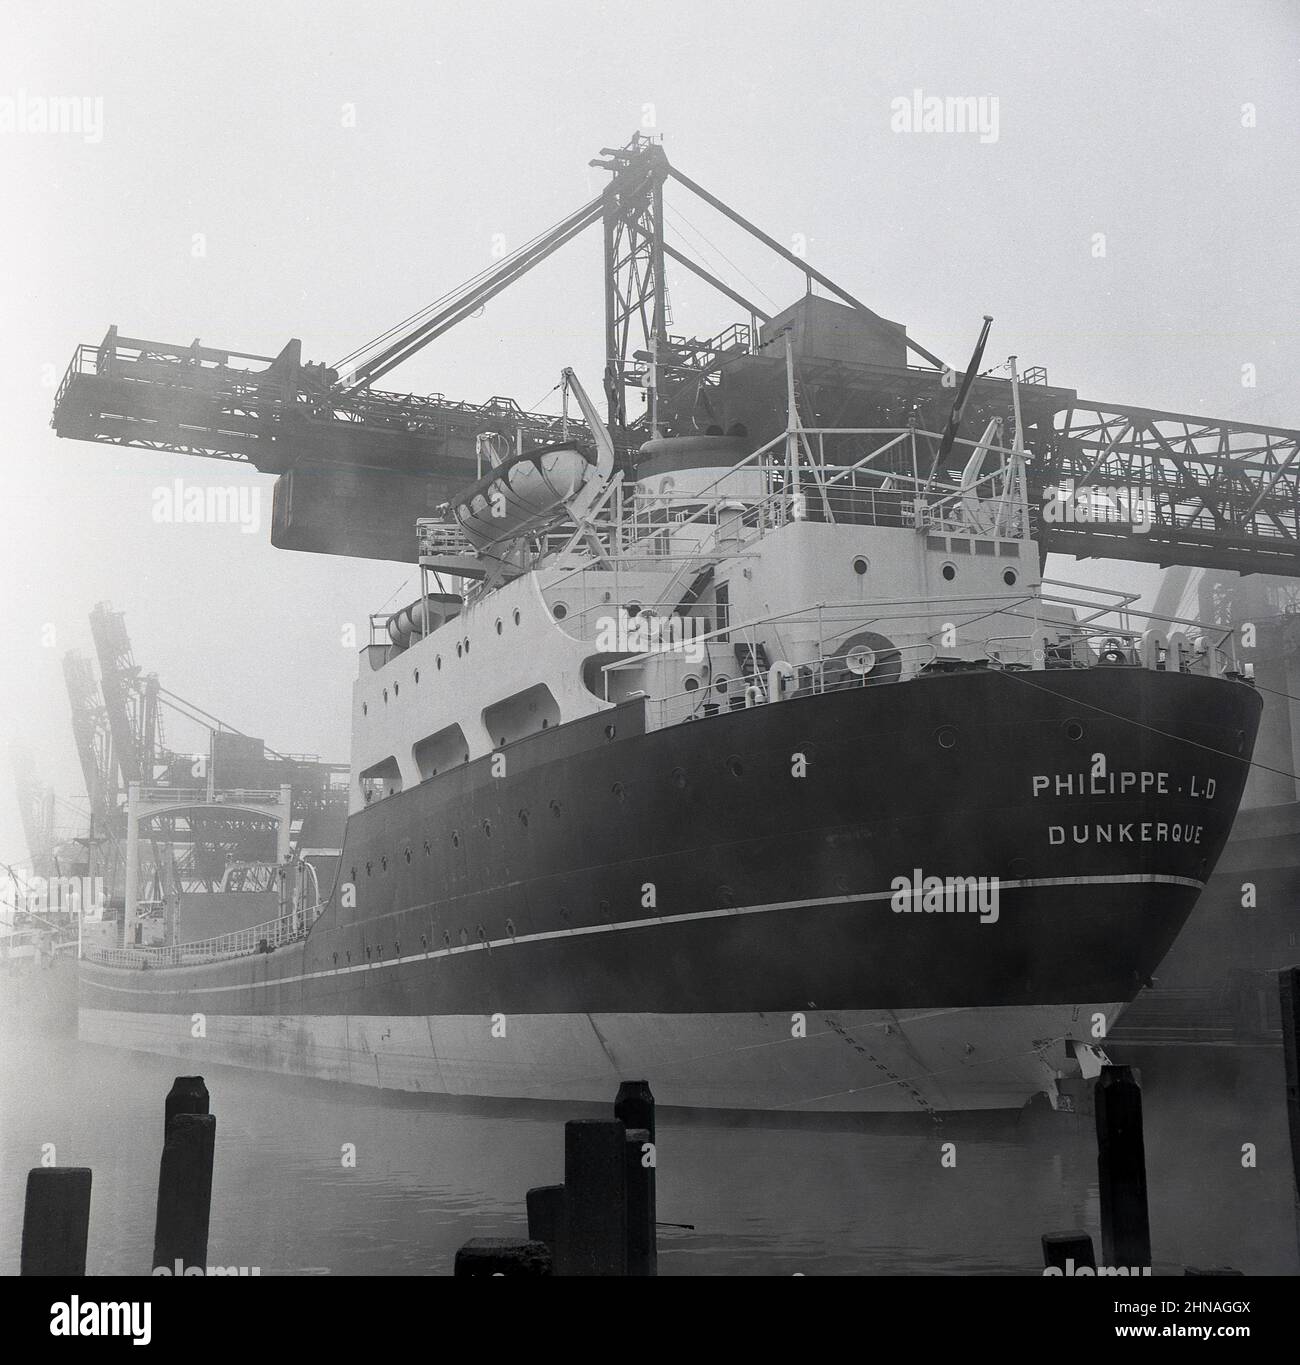 1950s, historisch, das Louis Dreyfus Containerschiff, Philippe. L.D. II) von Dunkerque, der auf dem Industriedock in Port Talbot, Wales, Großbritannien, mit schwerer Stahlladung verladen wurde. Im Auftrag der Steel of Company of Wales wurde dieses Schiff gebaut, das zweite mit dem Namen Philppe LD. Ein Erzträger mit einem All-Aft-Design und einem flachen Tiefgang das Schiff wurde speziell für die industriellen britischen Häfen entwickelt. Die schwimmenden Docks schlossen 1959 für die Schifffahrt. Stockfoto